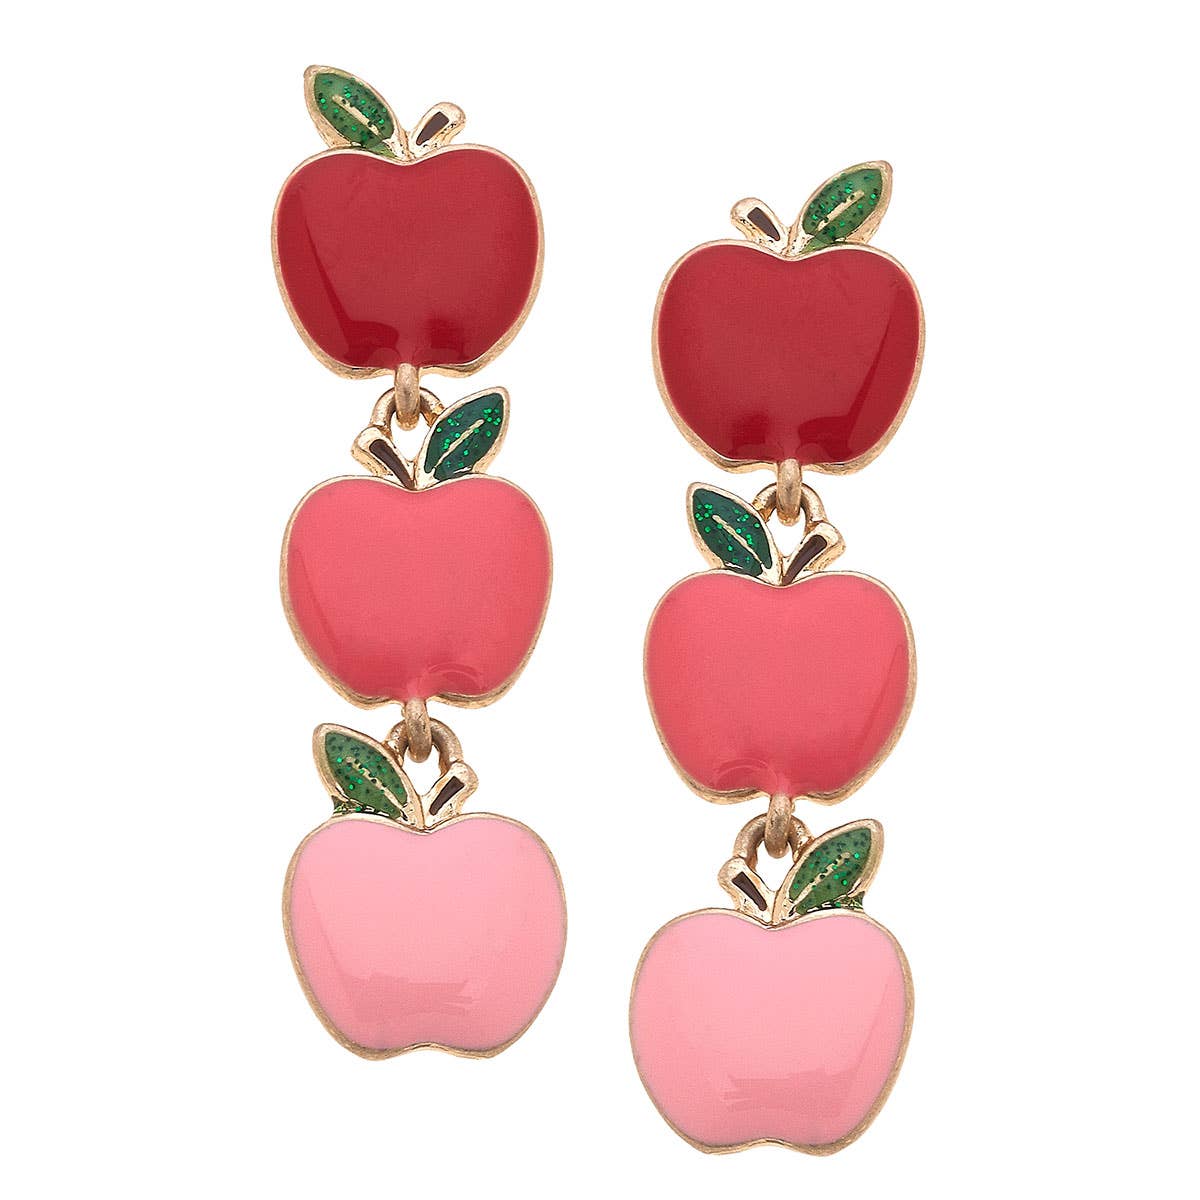 Linked Apples Enamel Earrings in Red